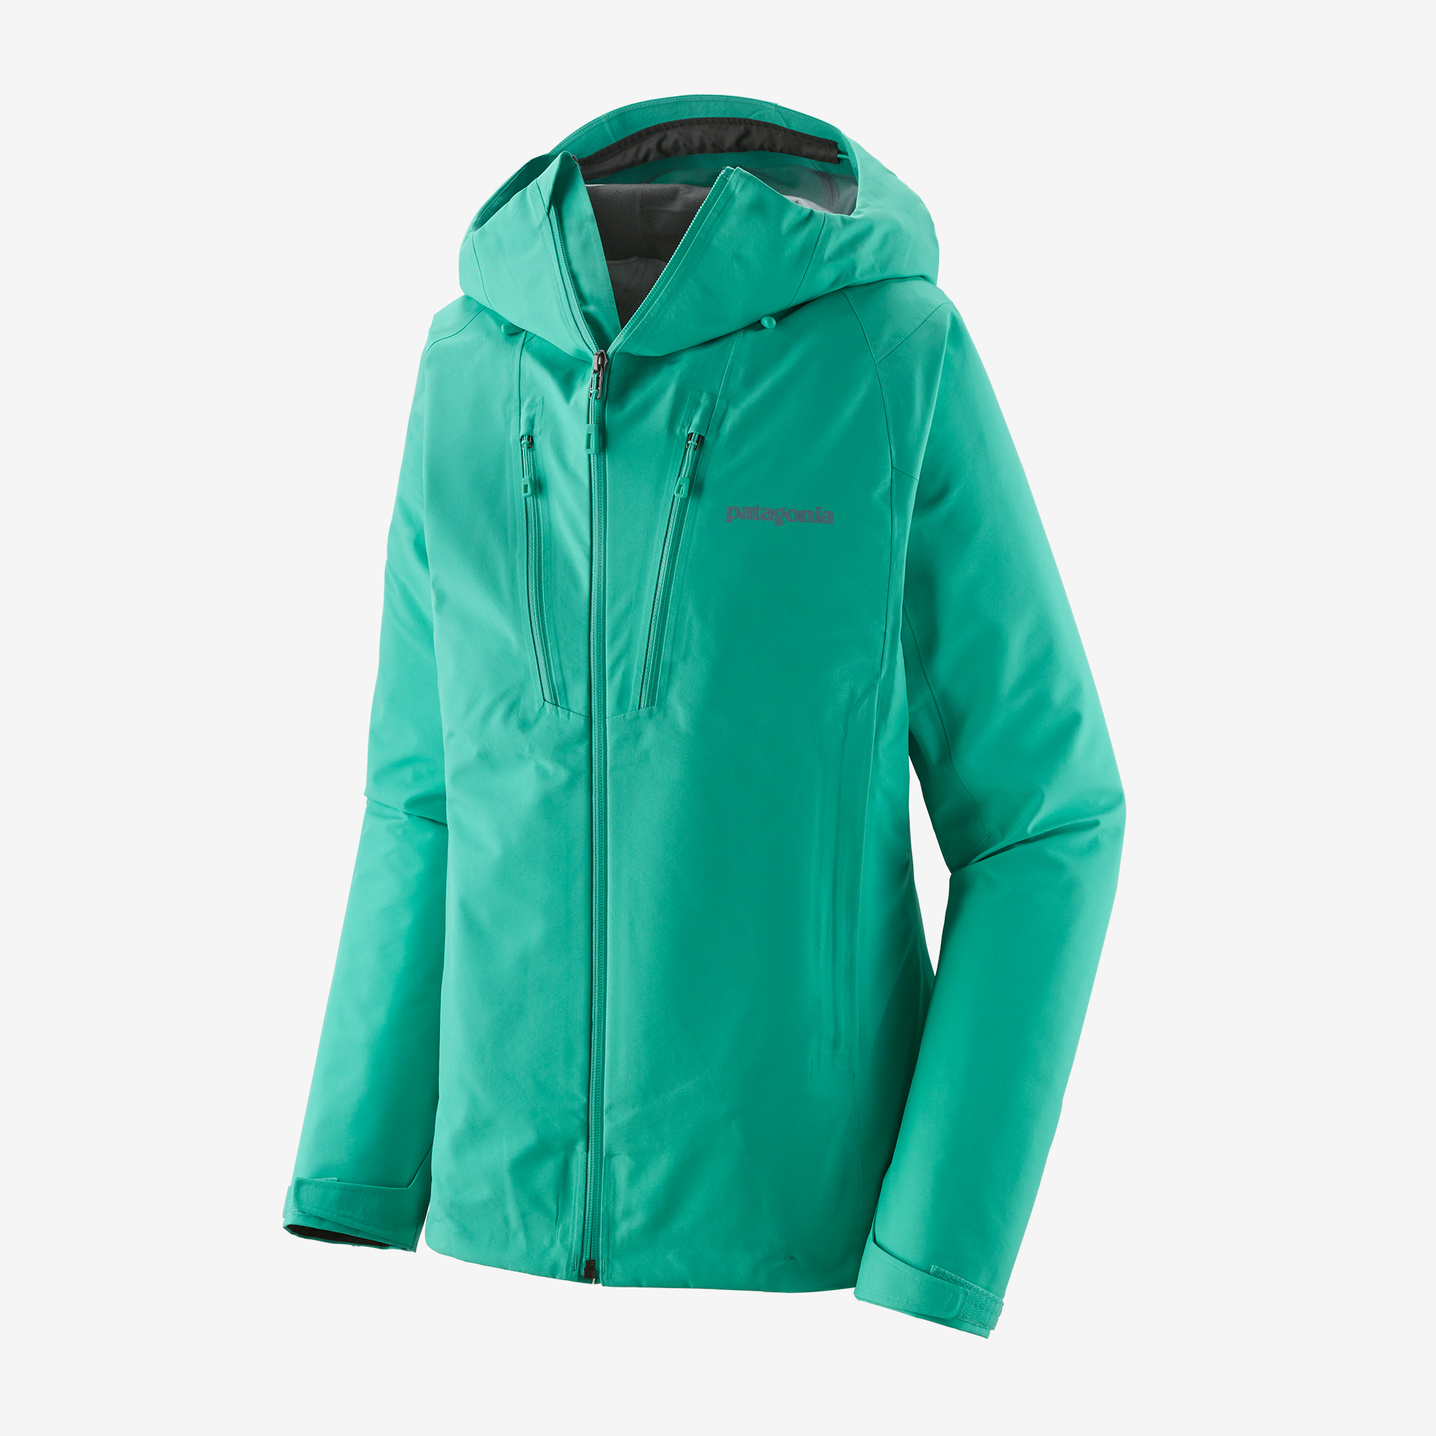 Patagonia Women's Triolet Waterproof Alpine Jacket